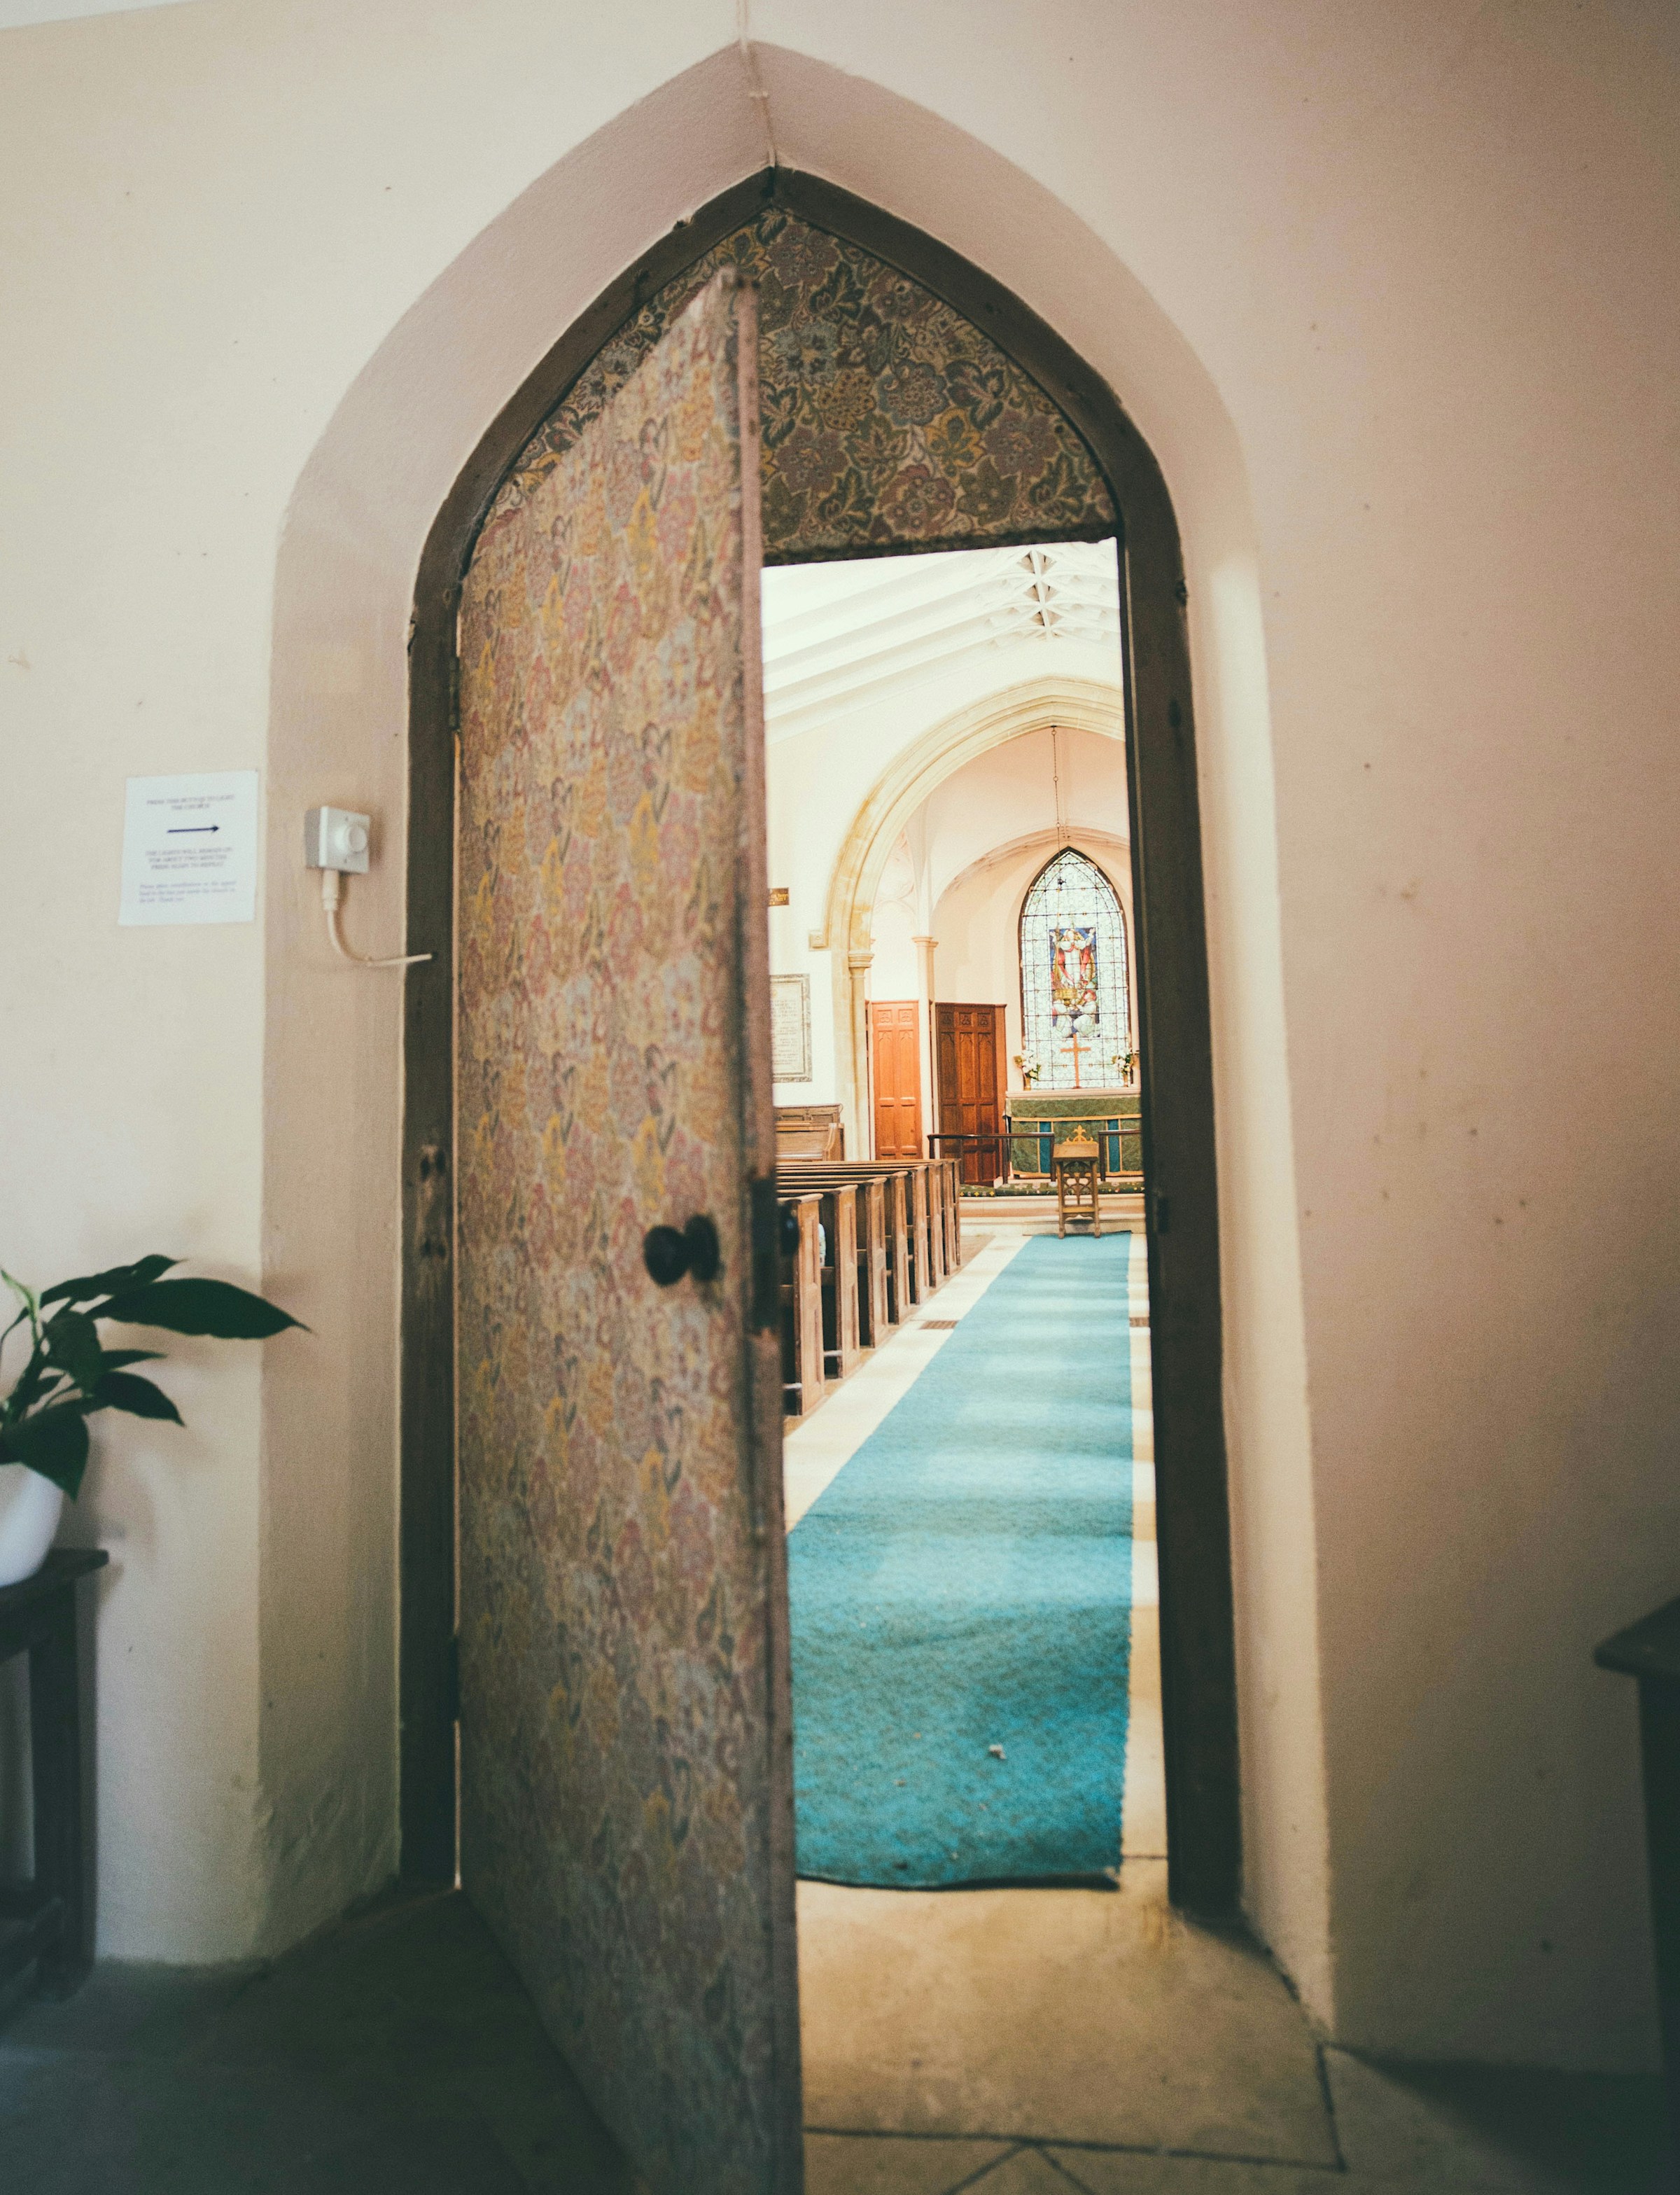 Puerta abierta de una iglesia | Foto: Pexels